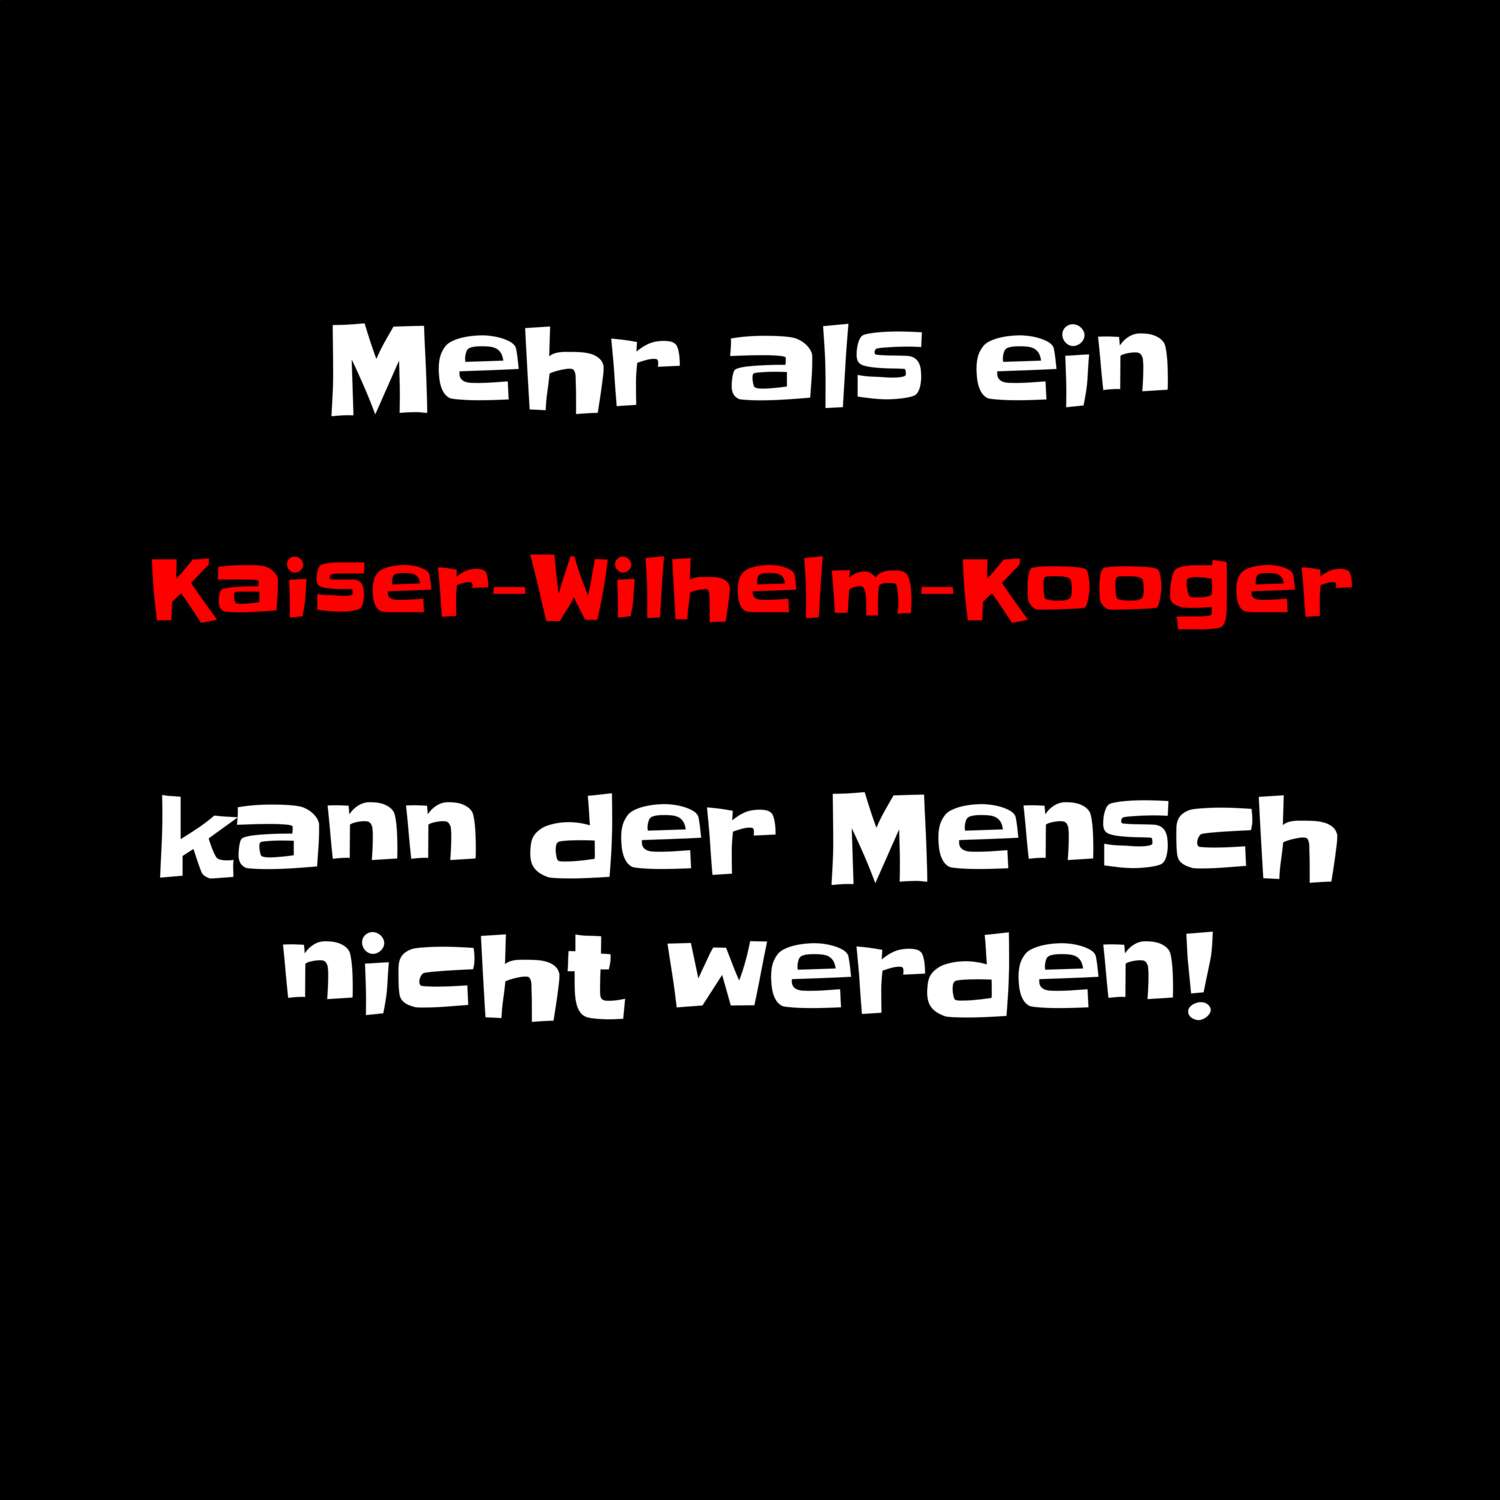 Kaiser-Wilhelm-Koog T-Shirt »Mehr als ein«